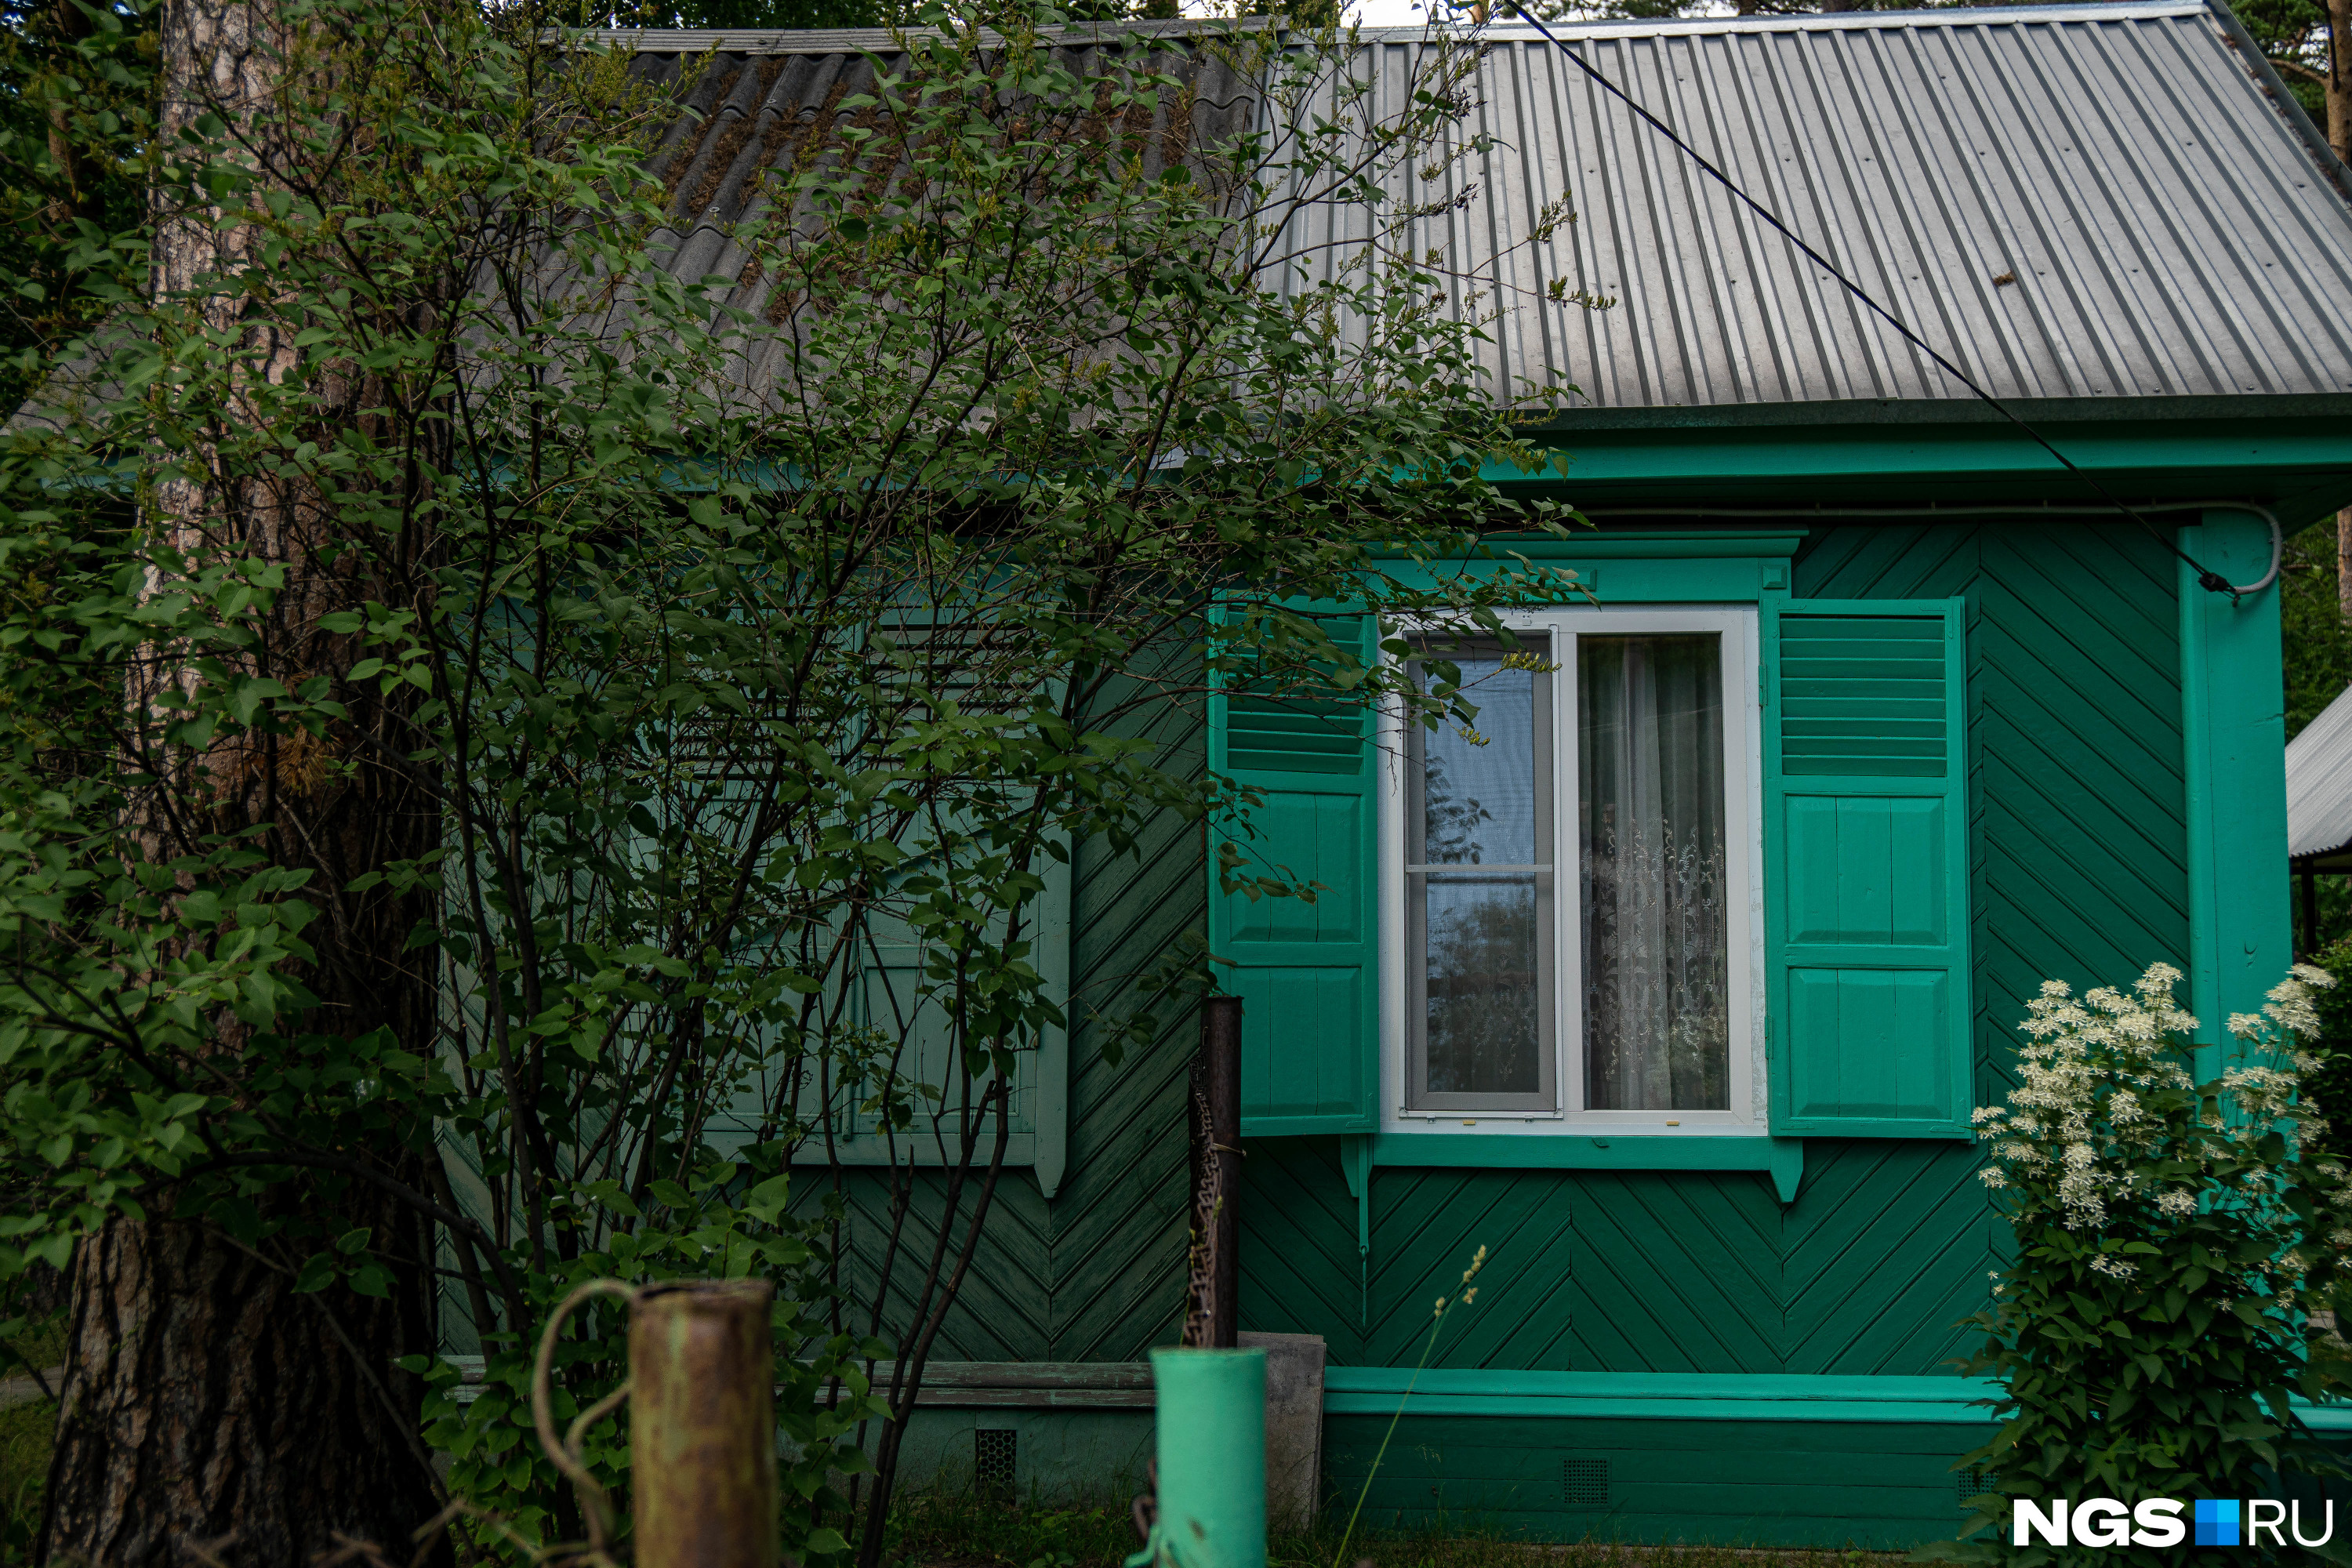 Изначально дома делились на две семьи, и некоторые сохранились именно такими советскими «дуплексами»